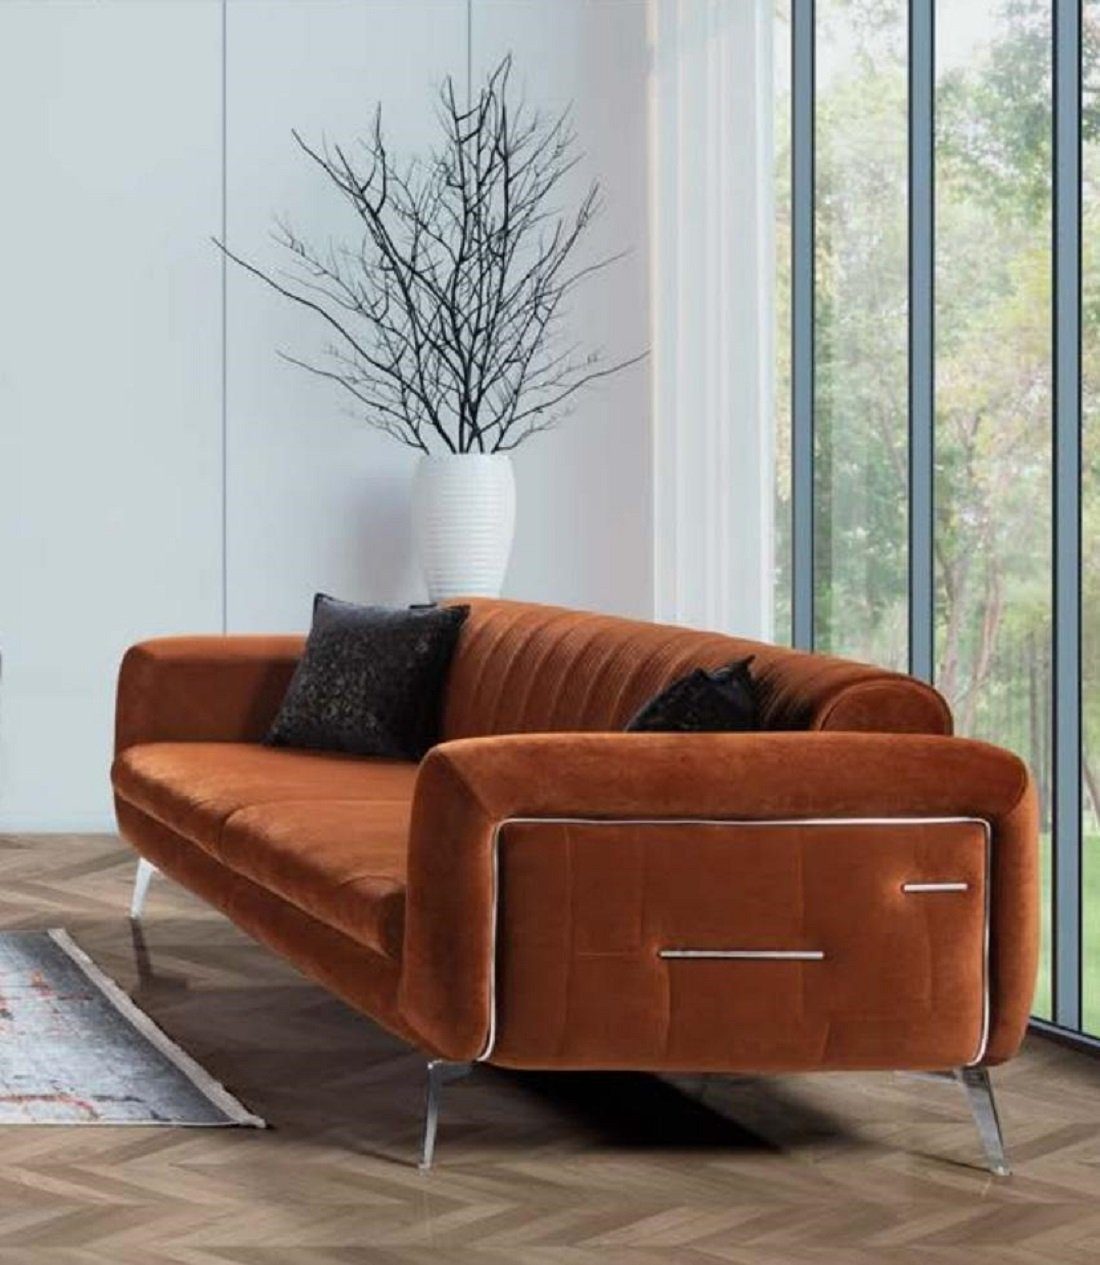 JVmoebel 3-Sitzer Braun Sofa Polster Dreisitzer Couchen Modern Design Neu | Einzelsofas